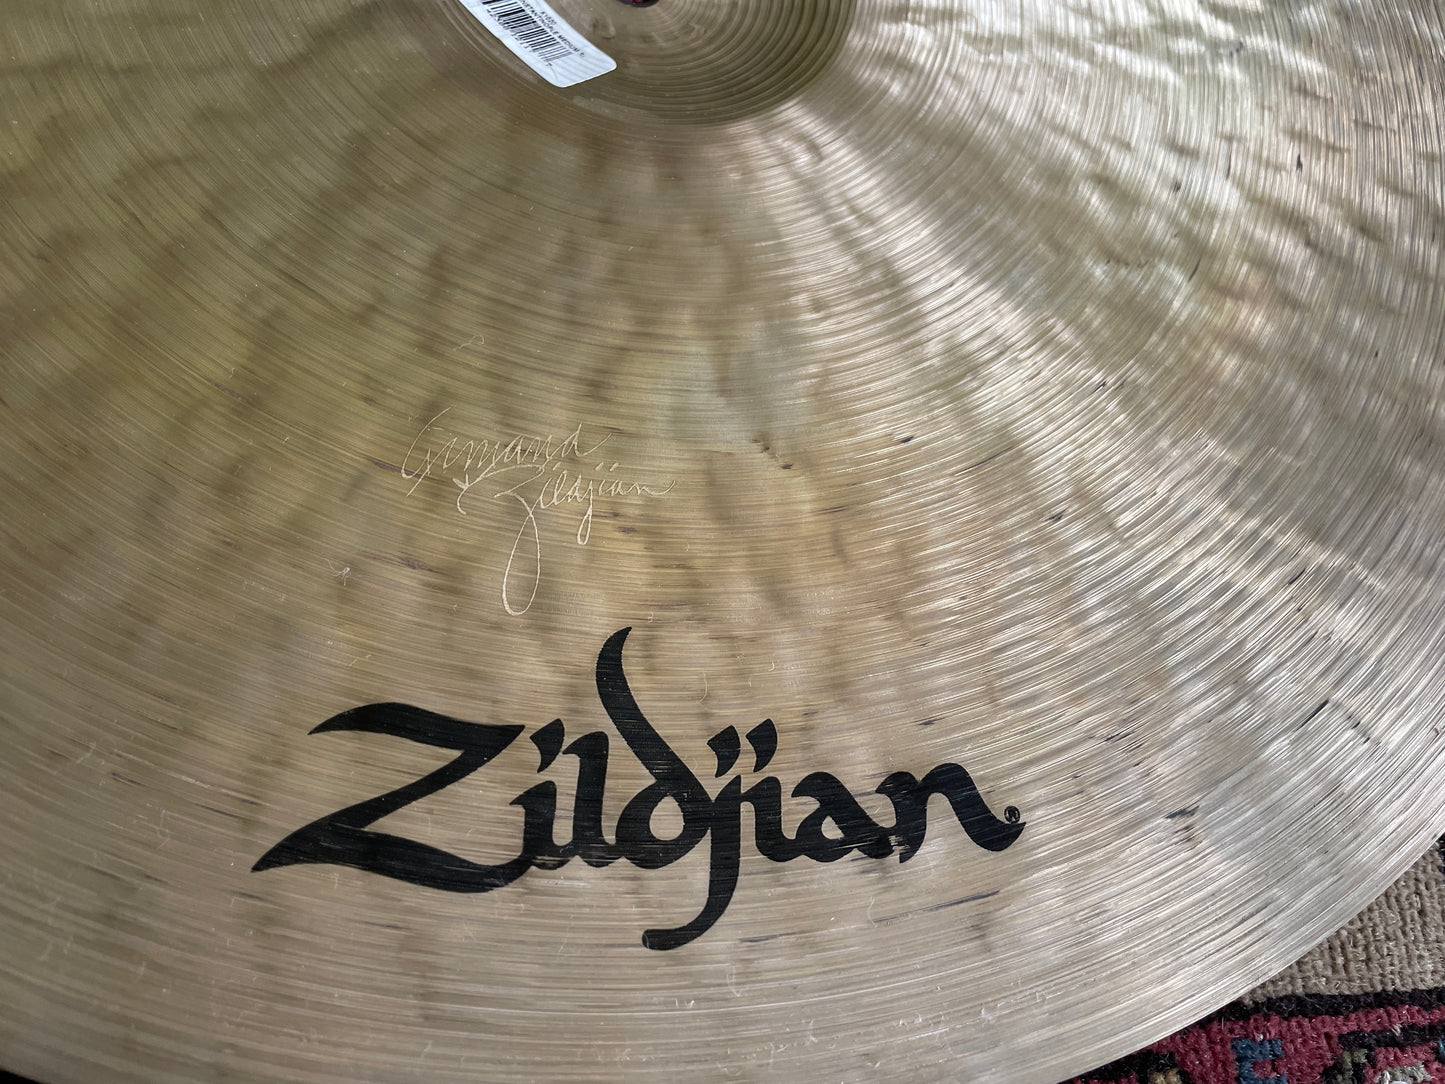 22" Zildjian K Constantinople Ride Cymbal 2862g